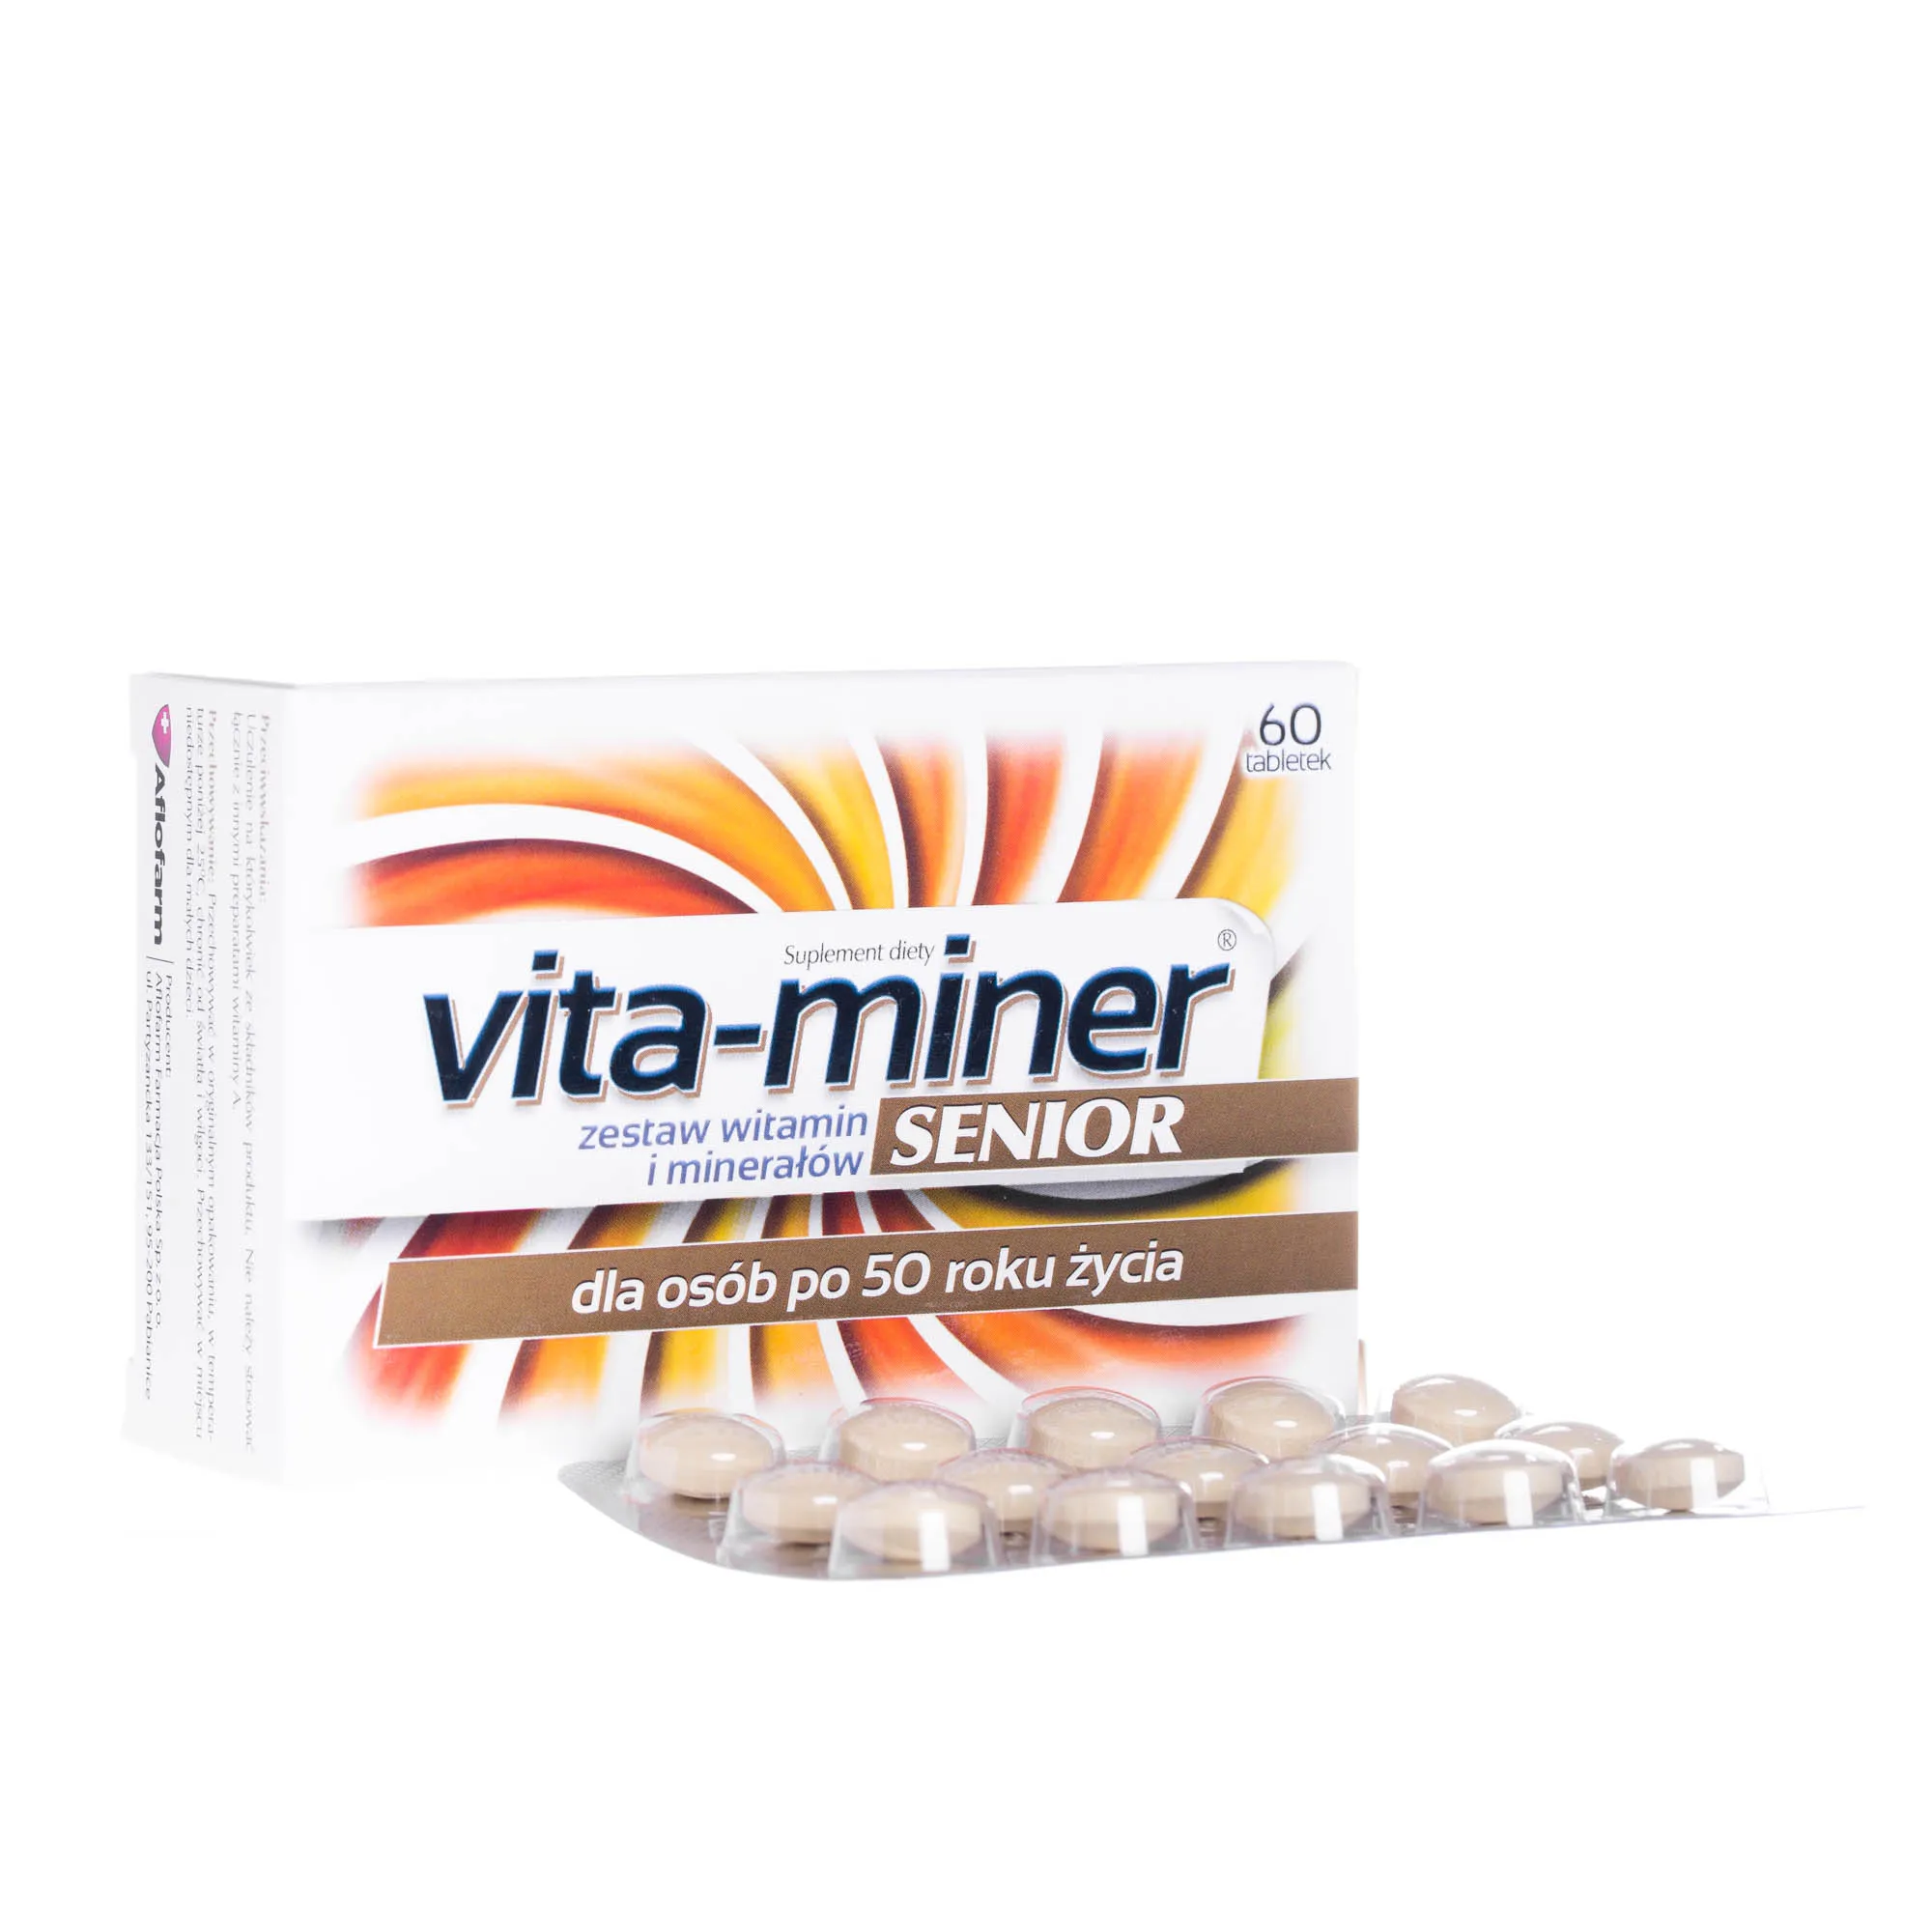 Vita-miner Senior - zestaw witamin i minerałów dla osób po 50 roku życia, 60 tabletek